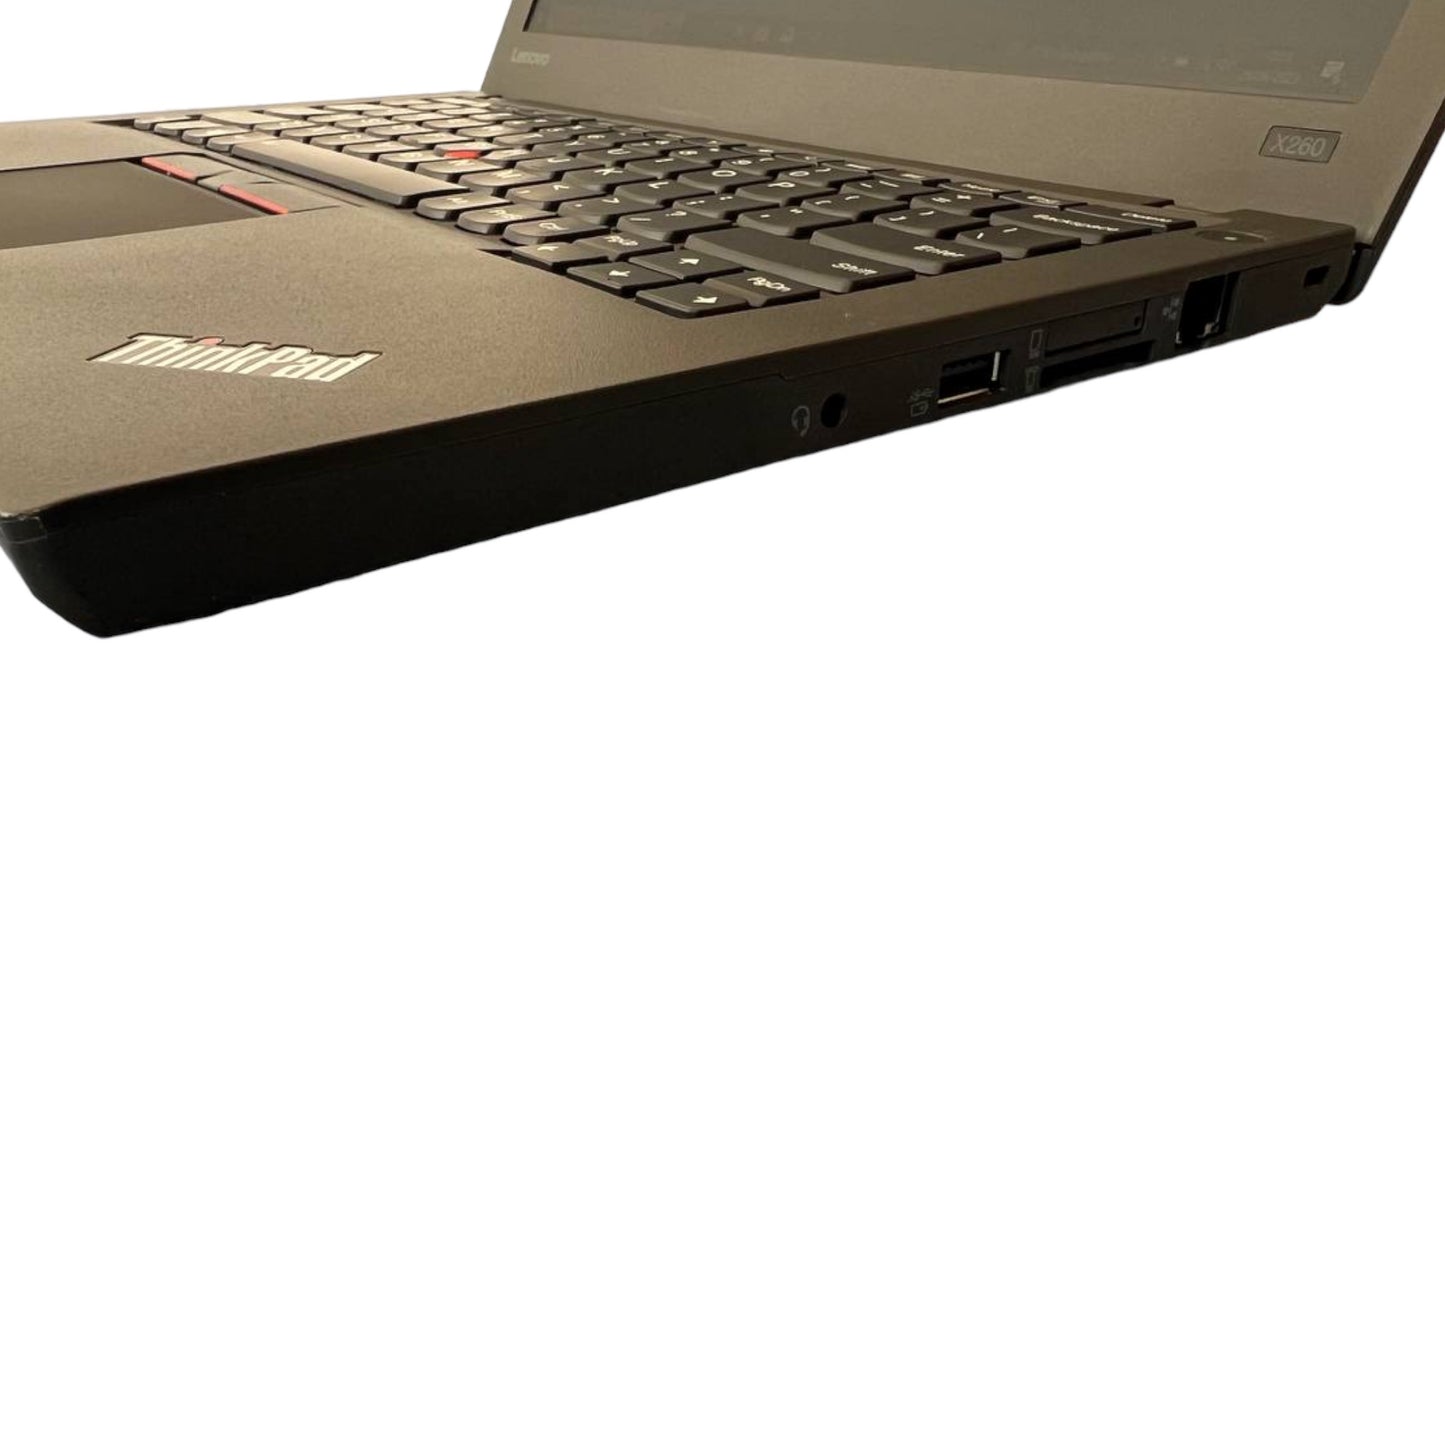 LENOVO X260, con Intel Core i5-6300U, 2326502R4